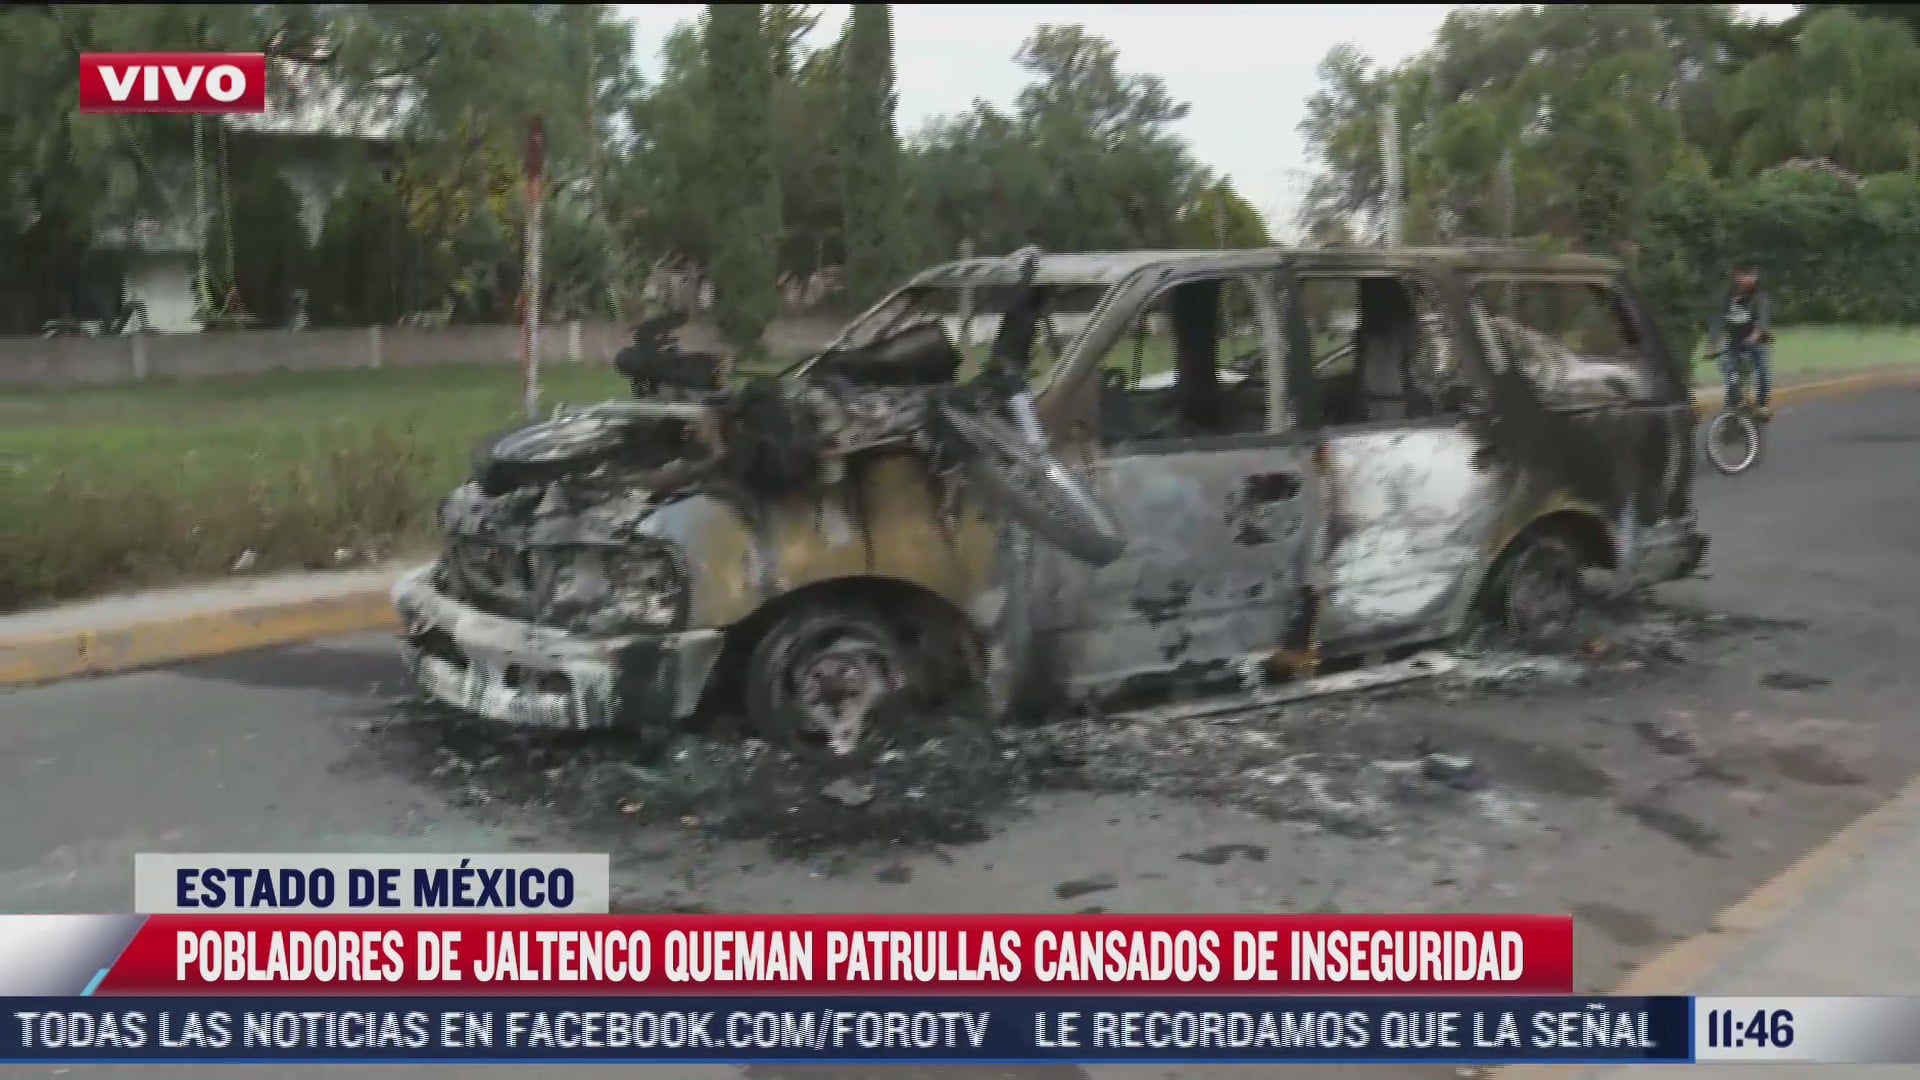 pobladores de jaltenco estado de mexico queman patrullas cansados de inseguridad